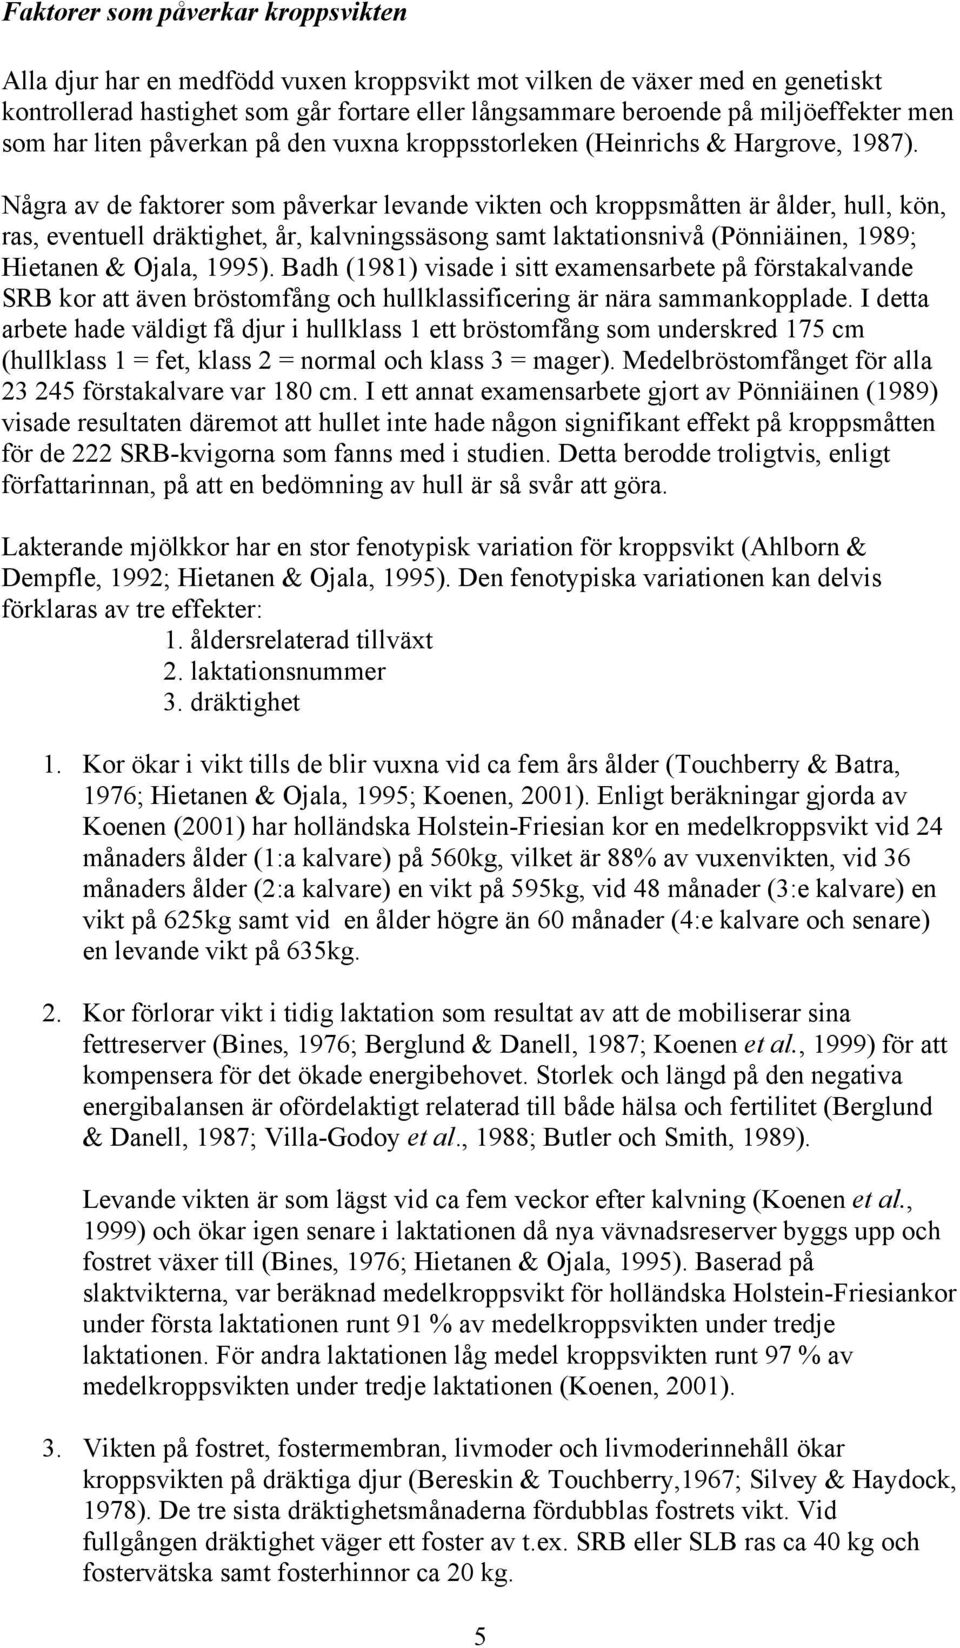 Några av de faktorer som påverkar levande vikten och kroppsmåtten är ålder, hull, kön, ras, eventuell dräktighet, år, kalvningssäsong samt laktationsnivå (Pönniäinen, 1989; Hietanen & Ojala, 1995).